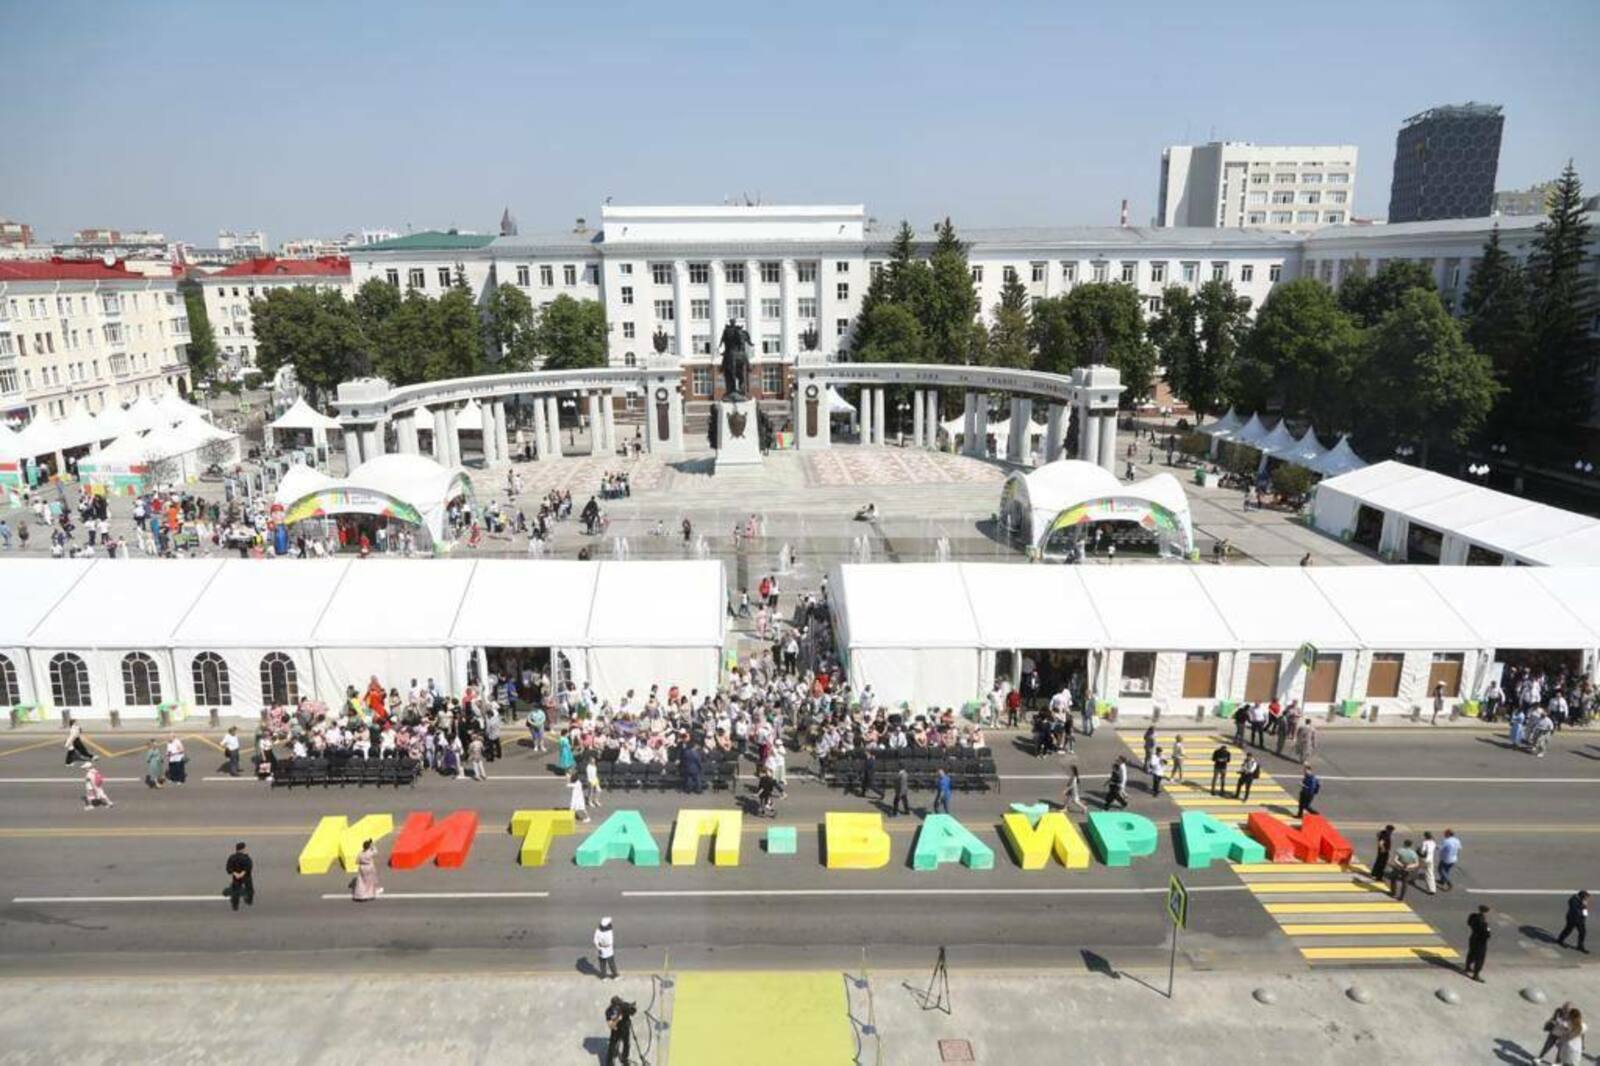 Уфа готовится к масштабному литературному празднику "Китап-байрам"